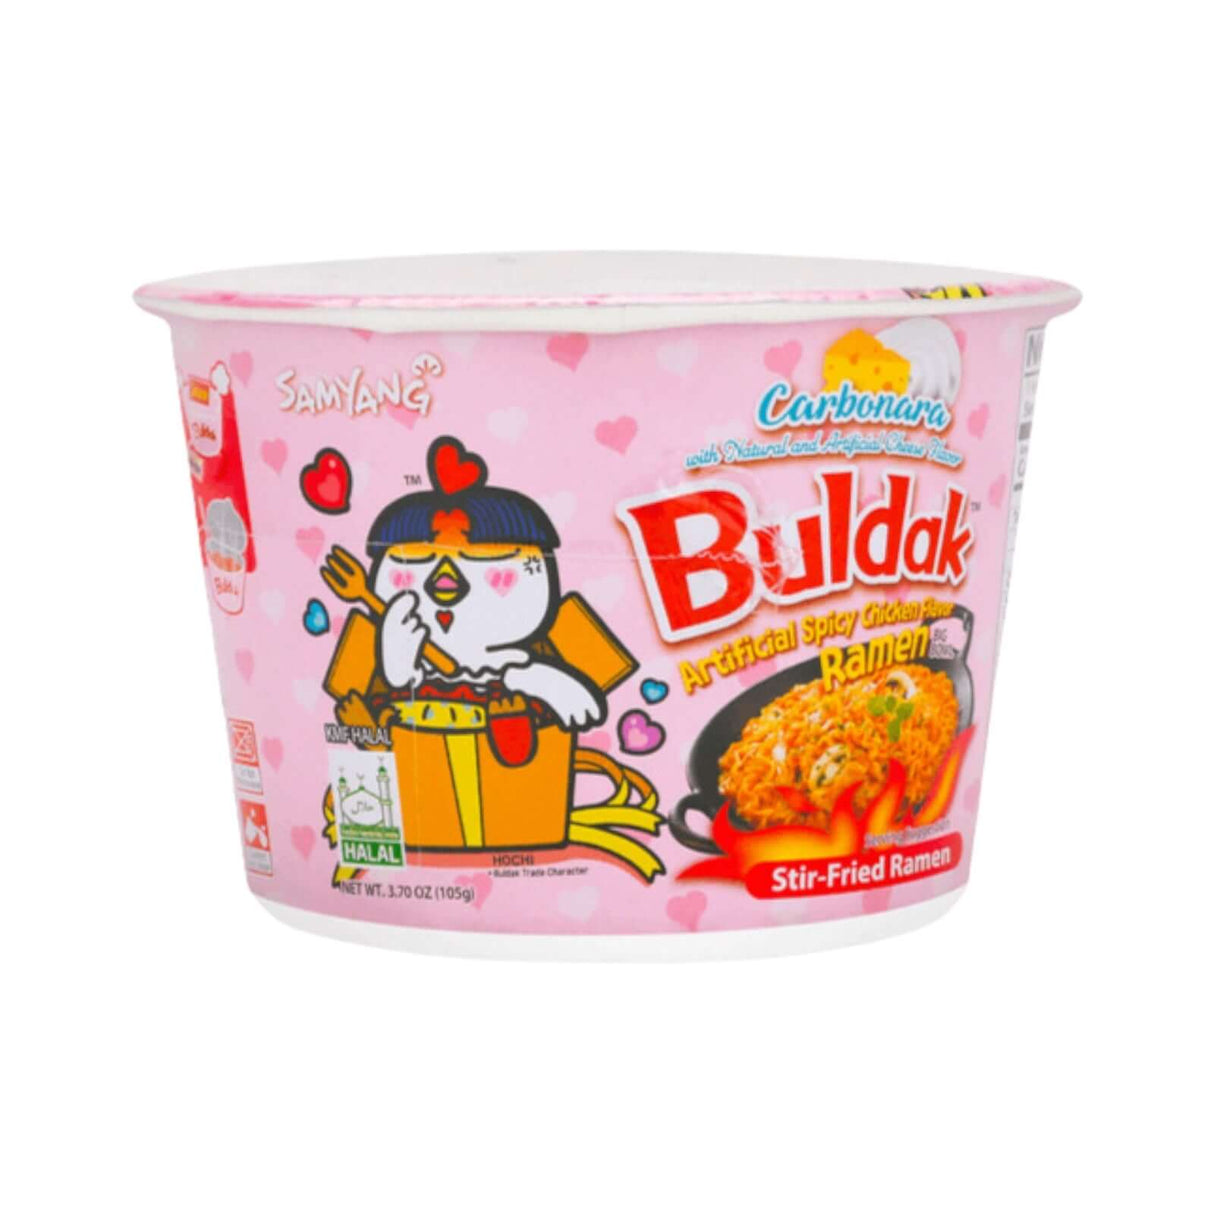 Samyang Buldak Carbonara Artificial Spicy Chicken Flavor Ramen